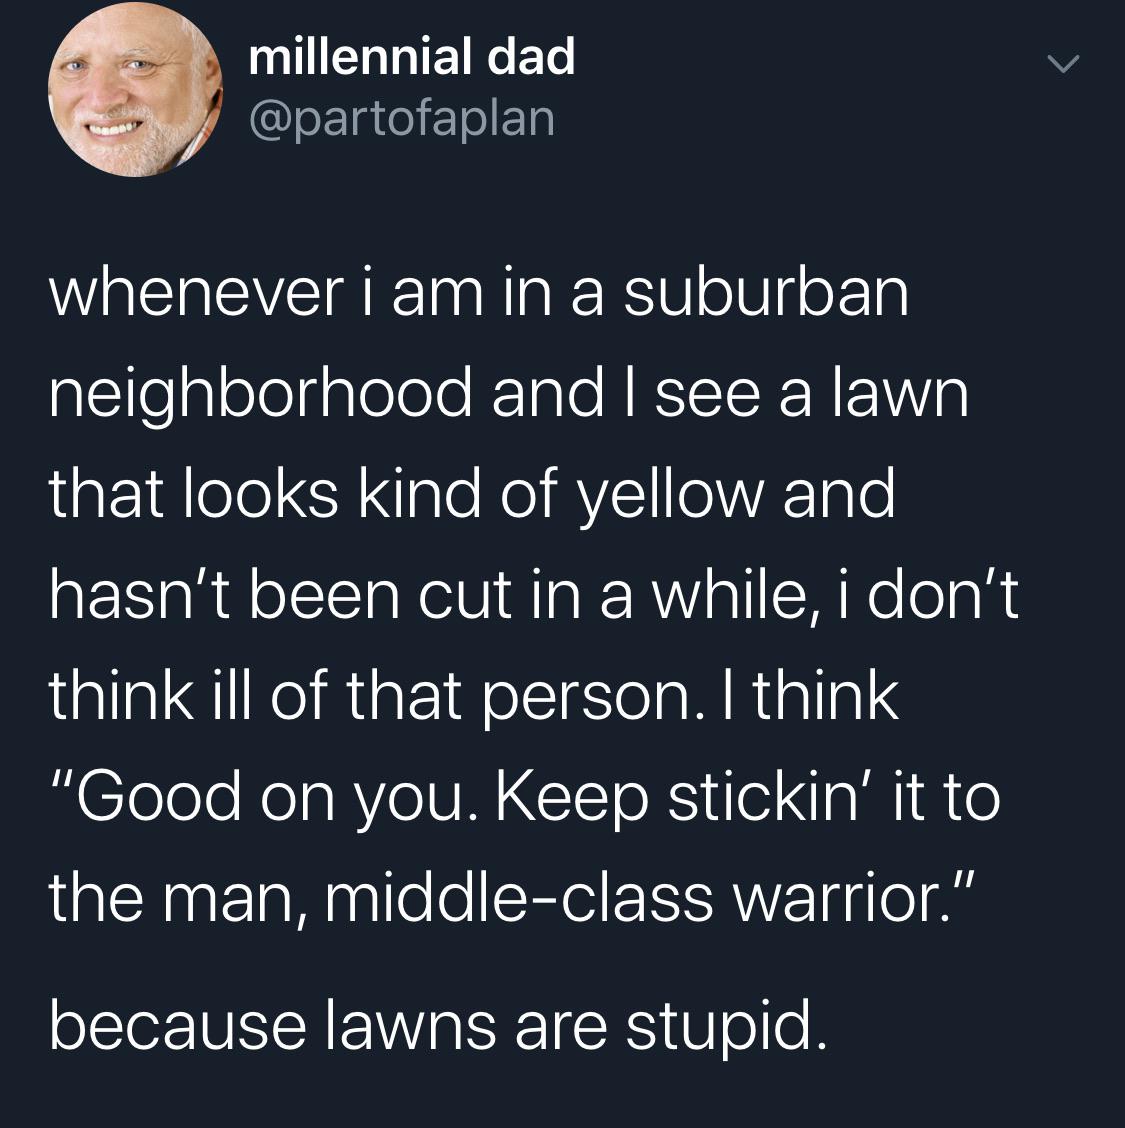 A+lawn+is+a+lawn+is+a+lawn.